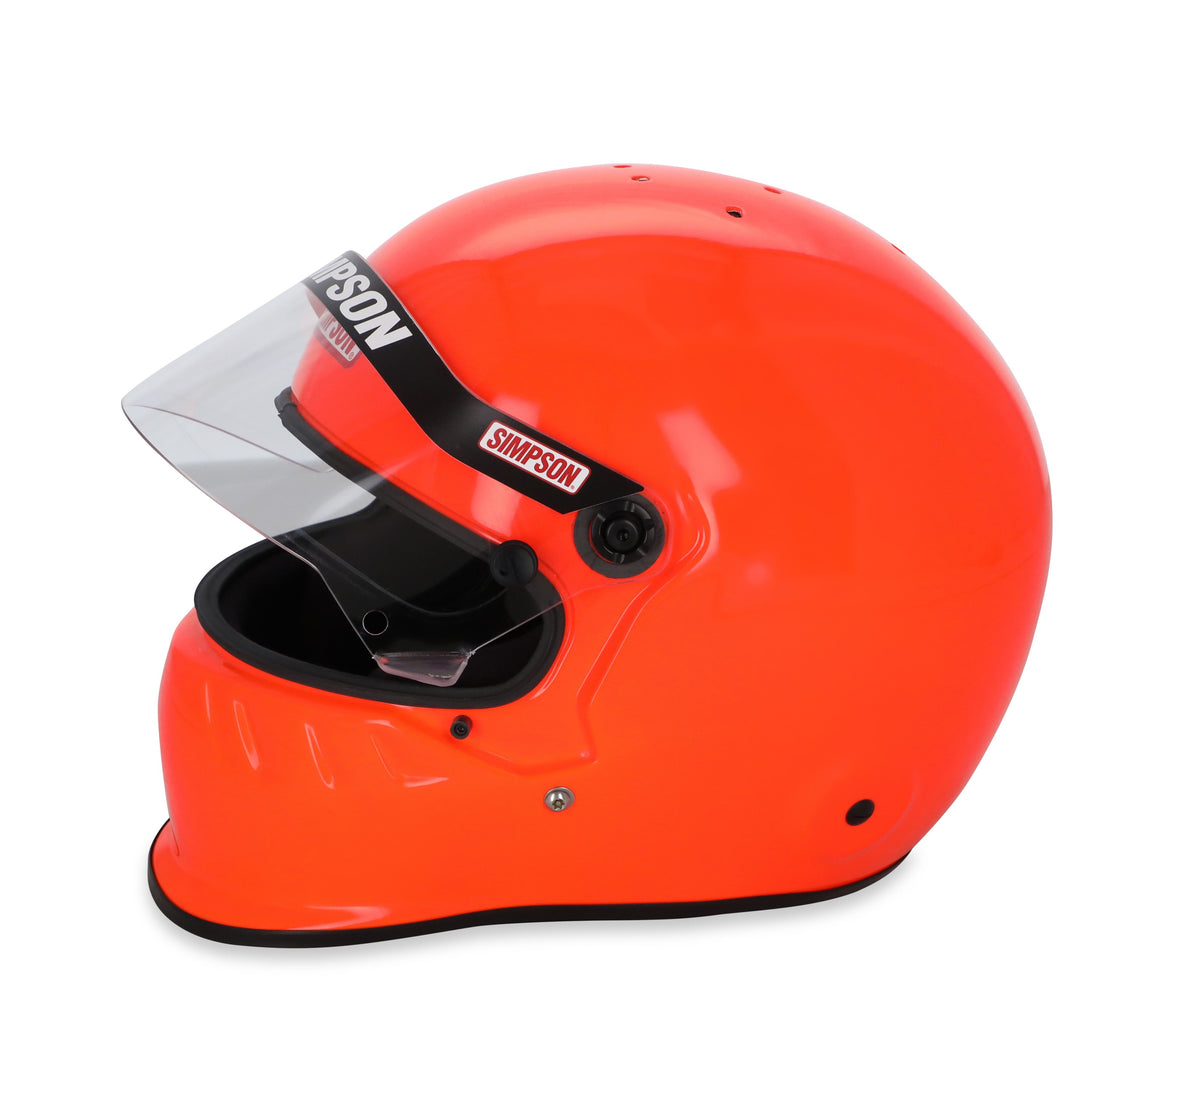 Simpson SD1 Helmet - Safety Orange